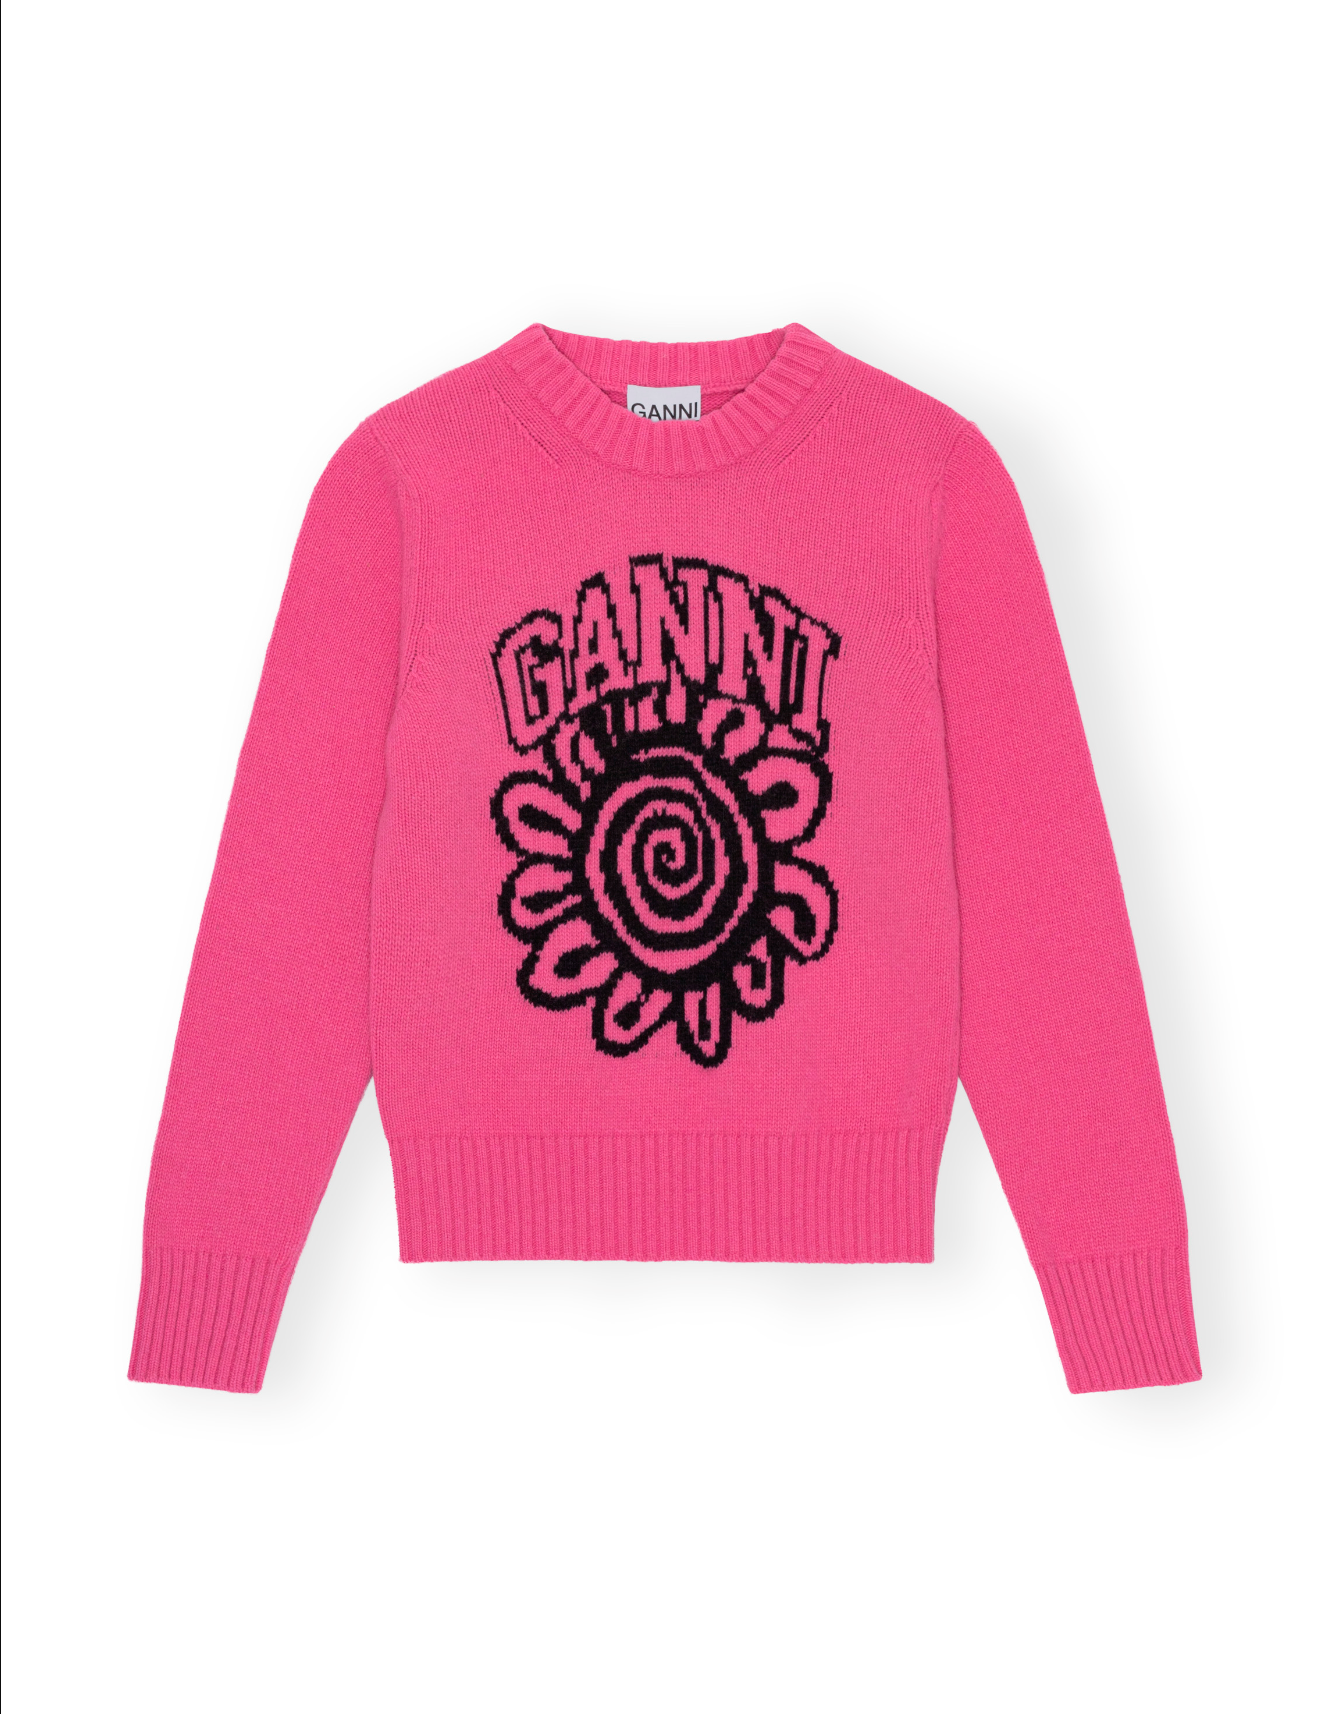 Ganni Flower Power Sweater